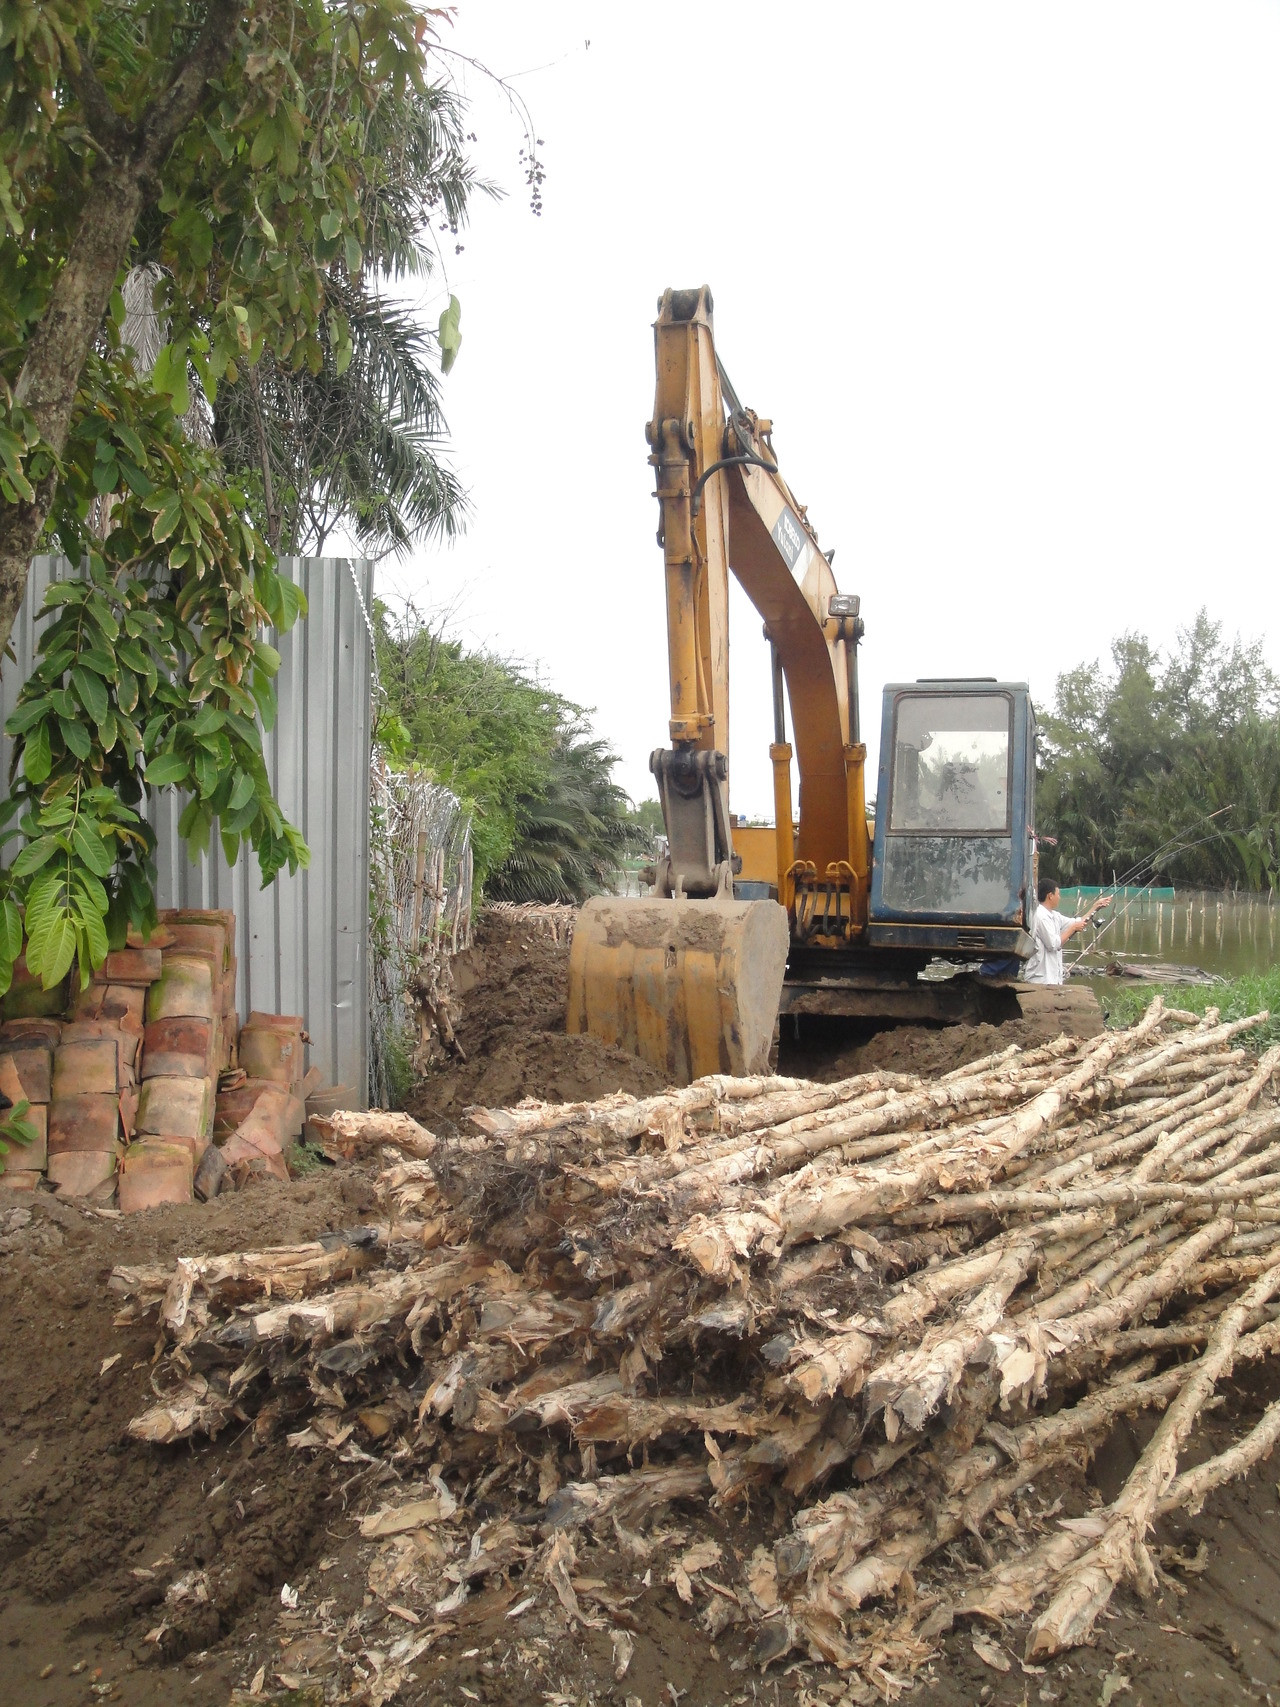 Vụ xây dựng lấn chiếm đất công tại quận 7, TP.HCM: UBND quận đã xử lý nghiêm và kịp thời mở đường dân sinh  